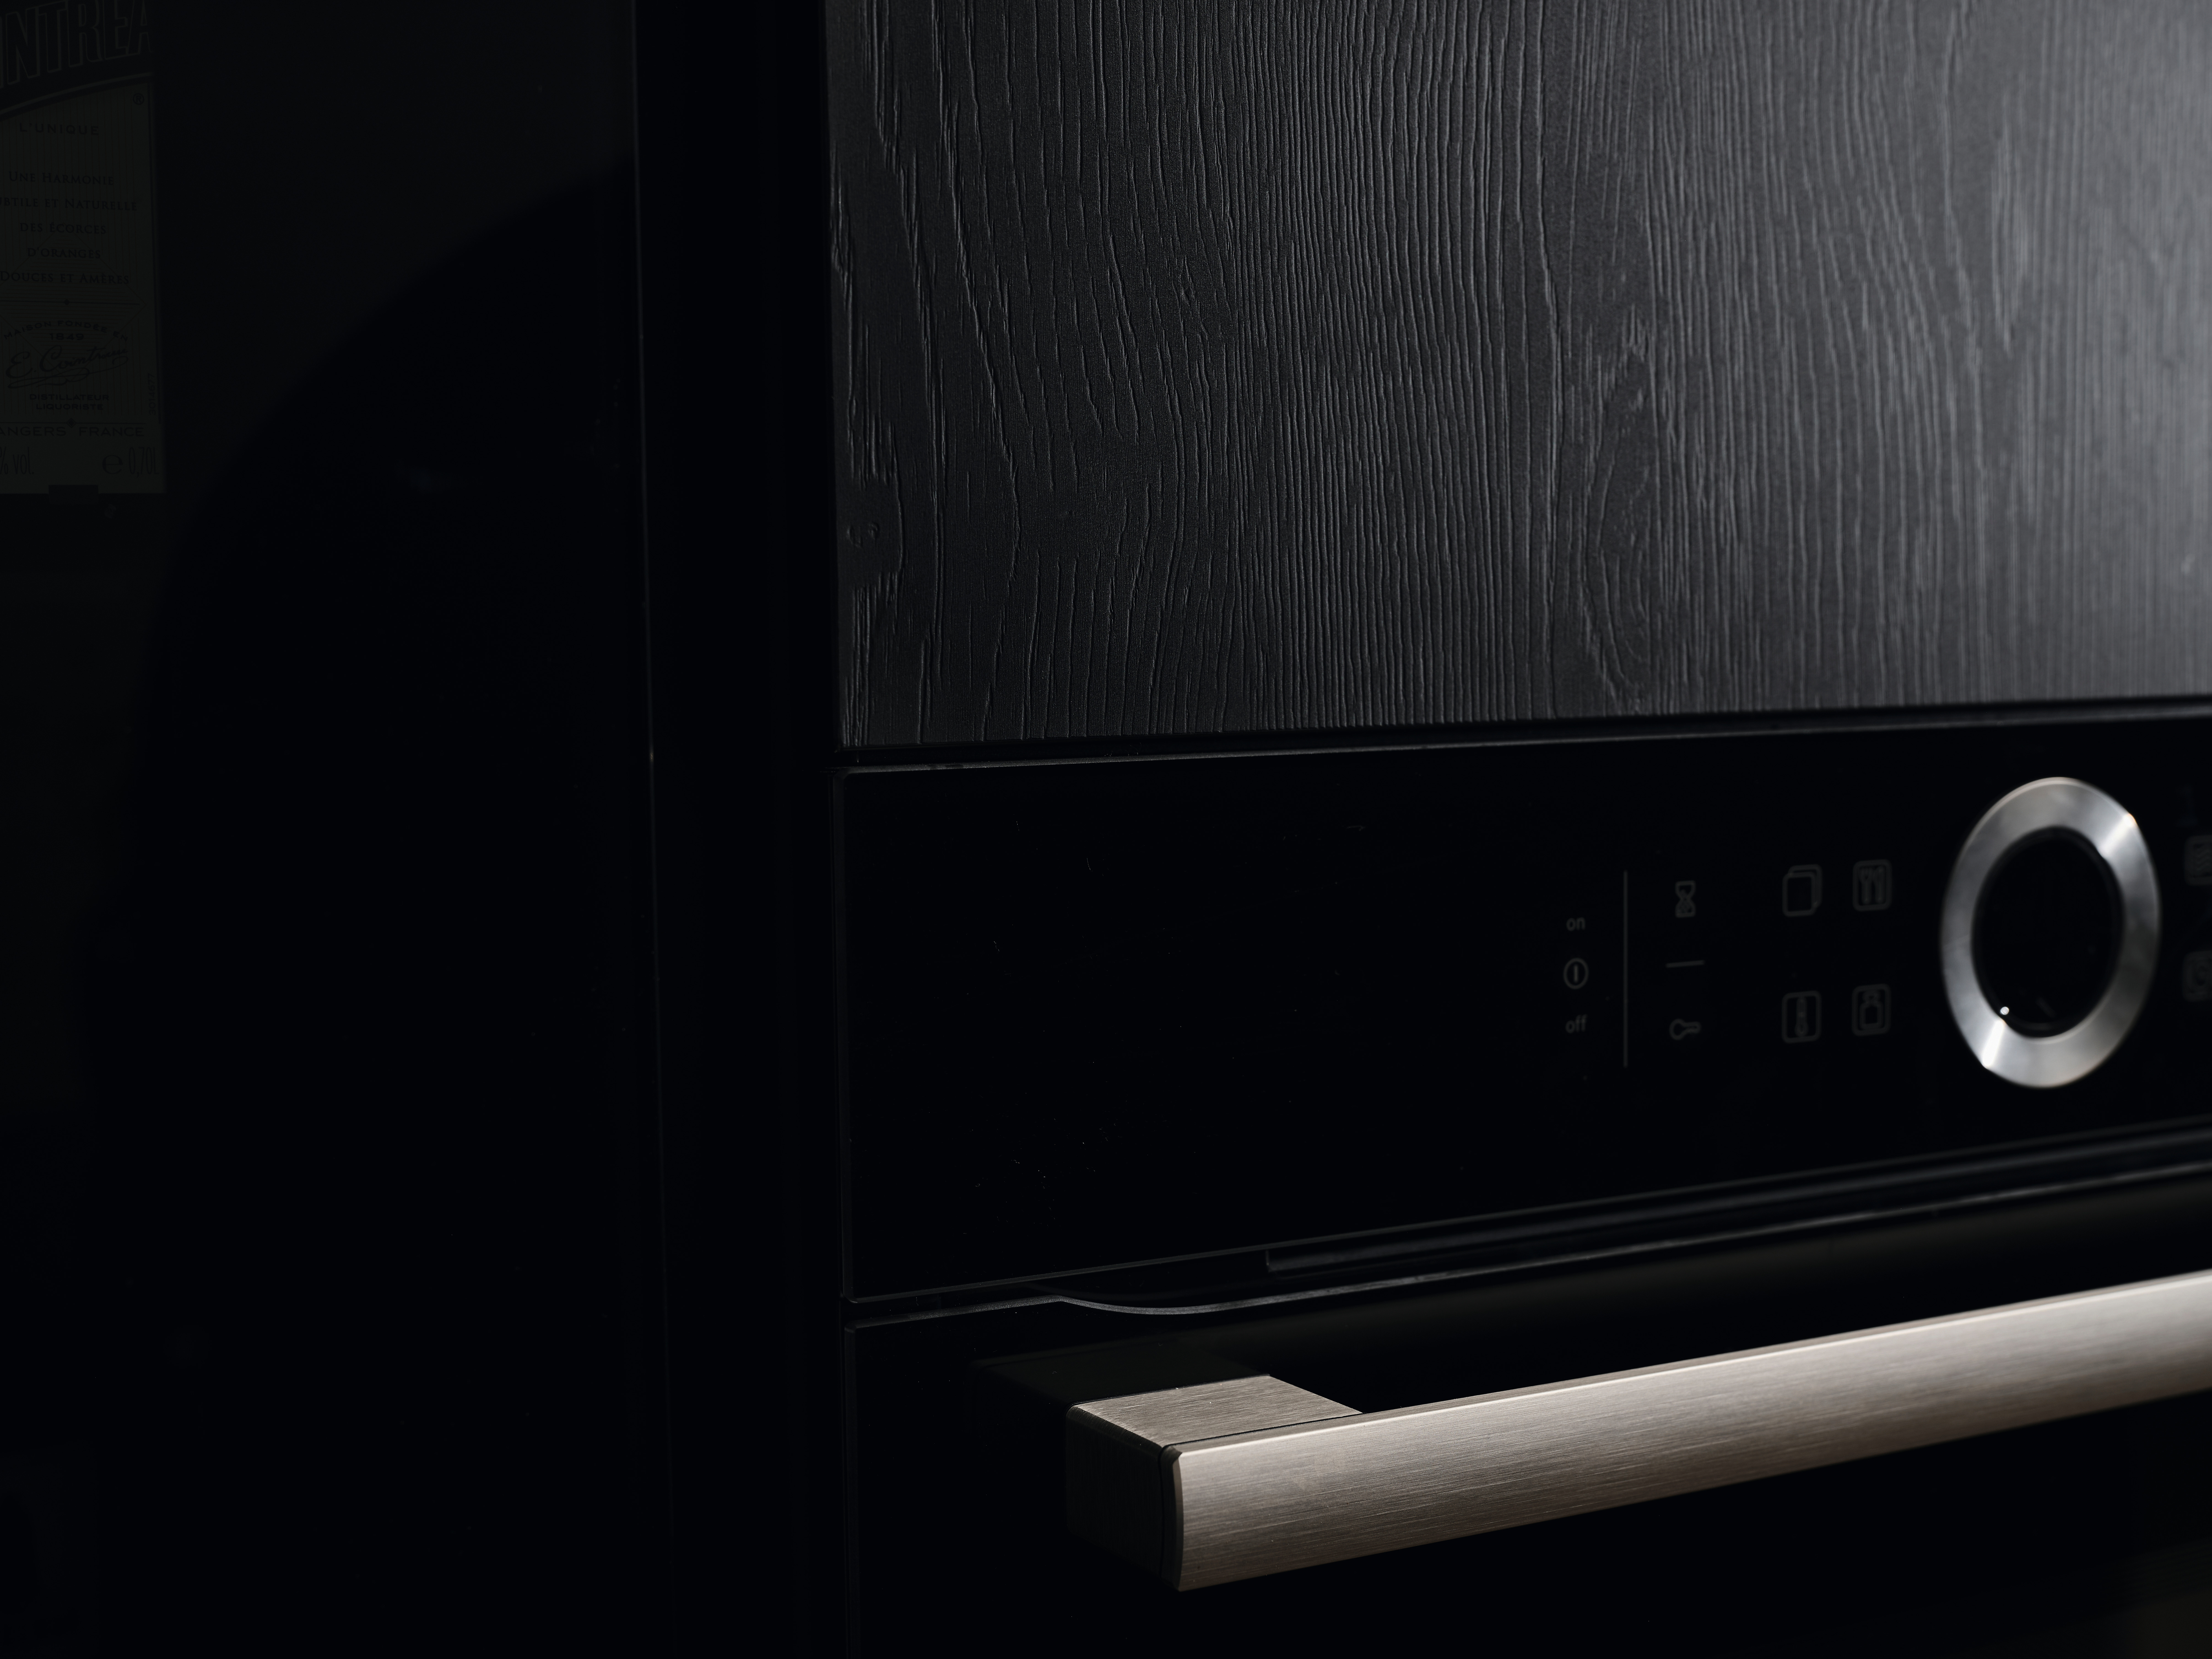 PerfectSense Feelwood U999 TM28 Siyah'ın özel yansıtıcı niteliği, bu mutfağa doğal ve zarif bir görünüm kazandırıyor. 